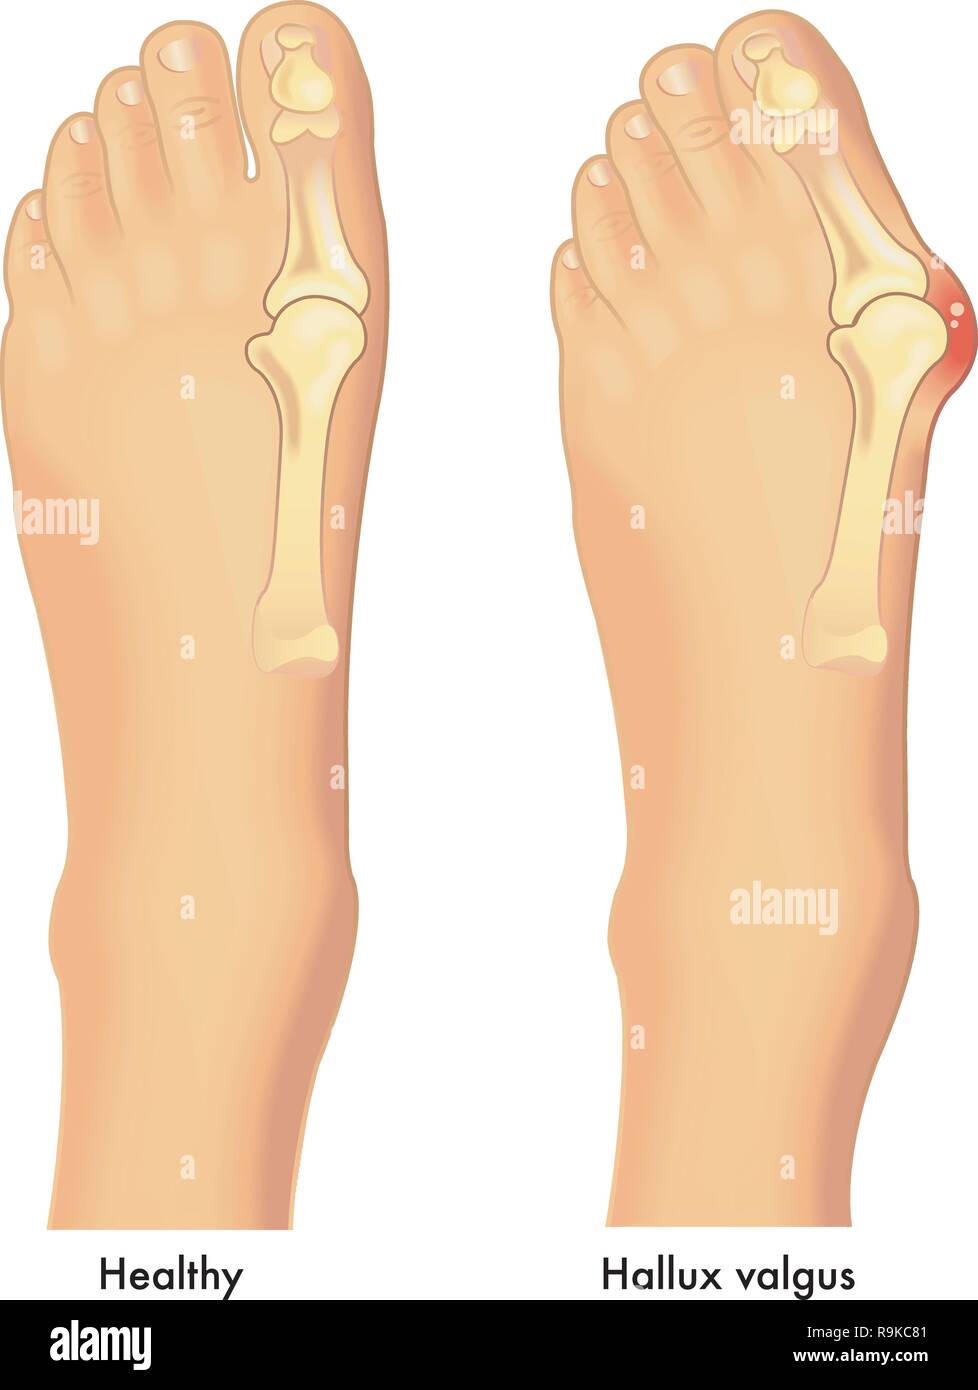 Eine medizinische Illustration eines gesunden Fuß und ein Fuß mit einem ballenzeh oder einer Hallux valgus auf das Gemeinsame der großen Zehe. Stock Vektor